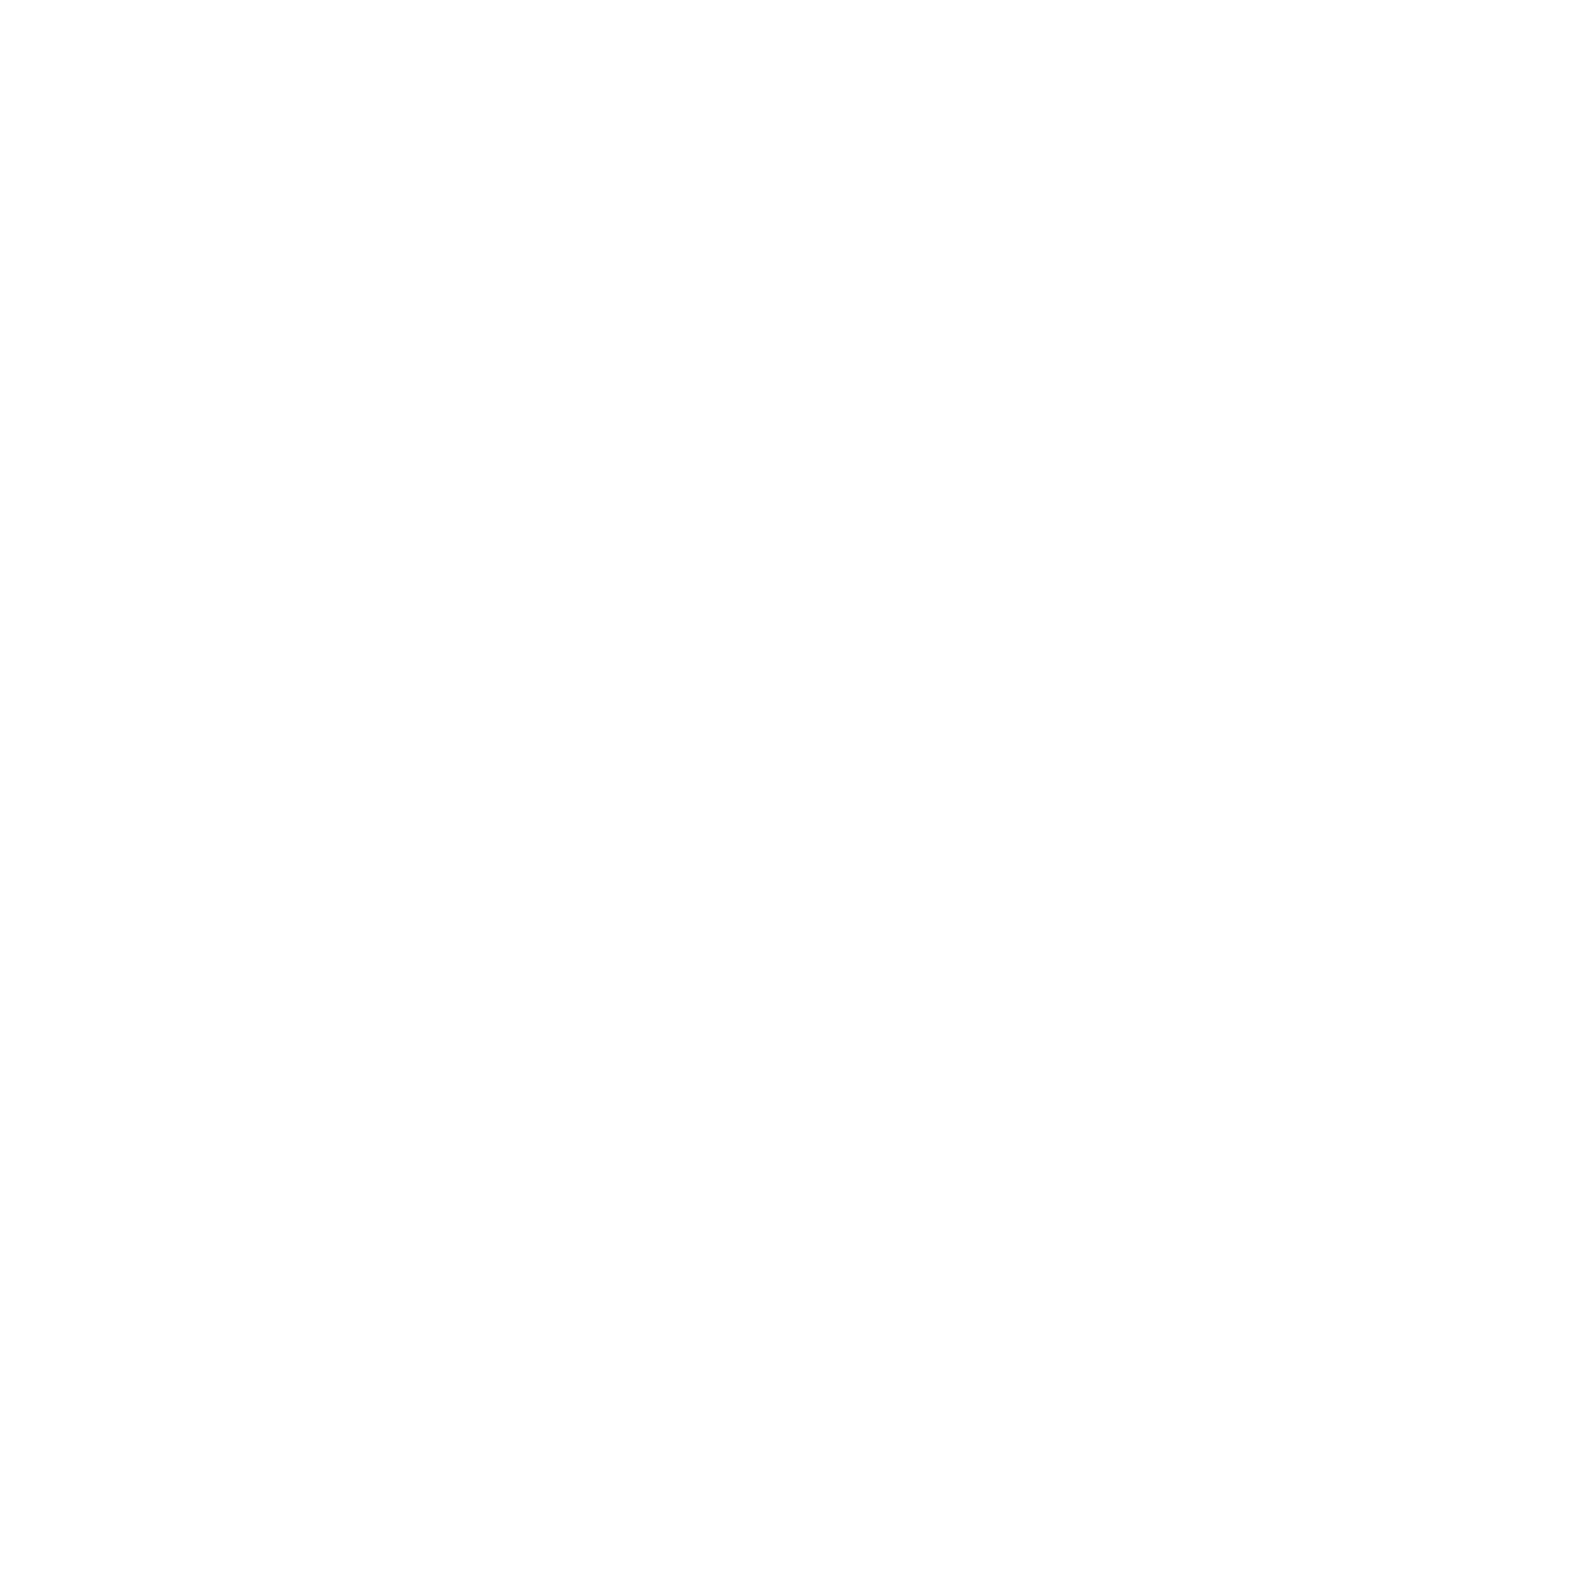 Madison Square Garden logo pour fonds sombres (PNG transparent)